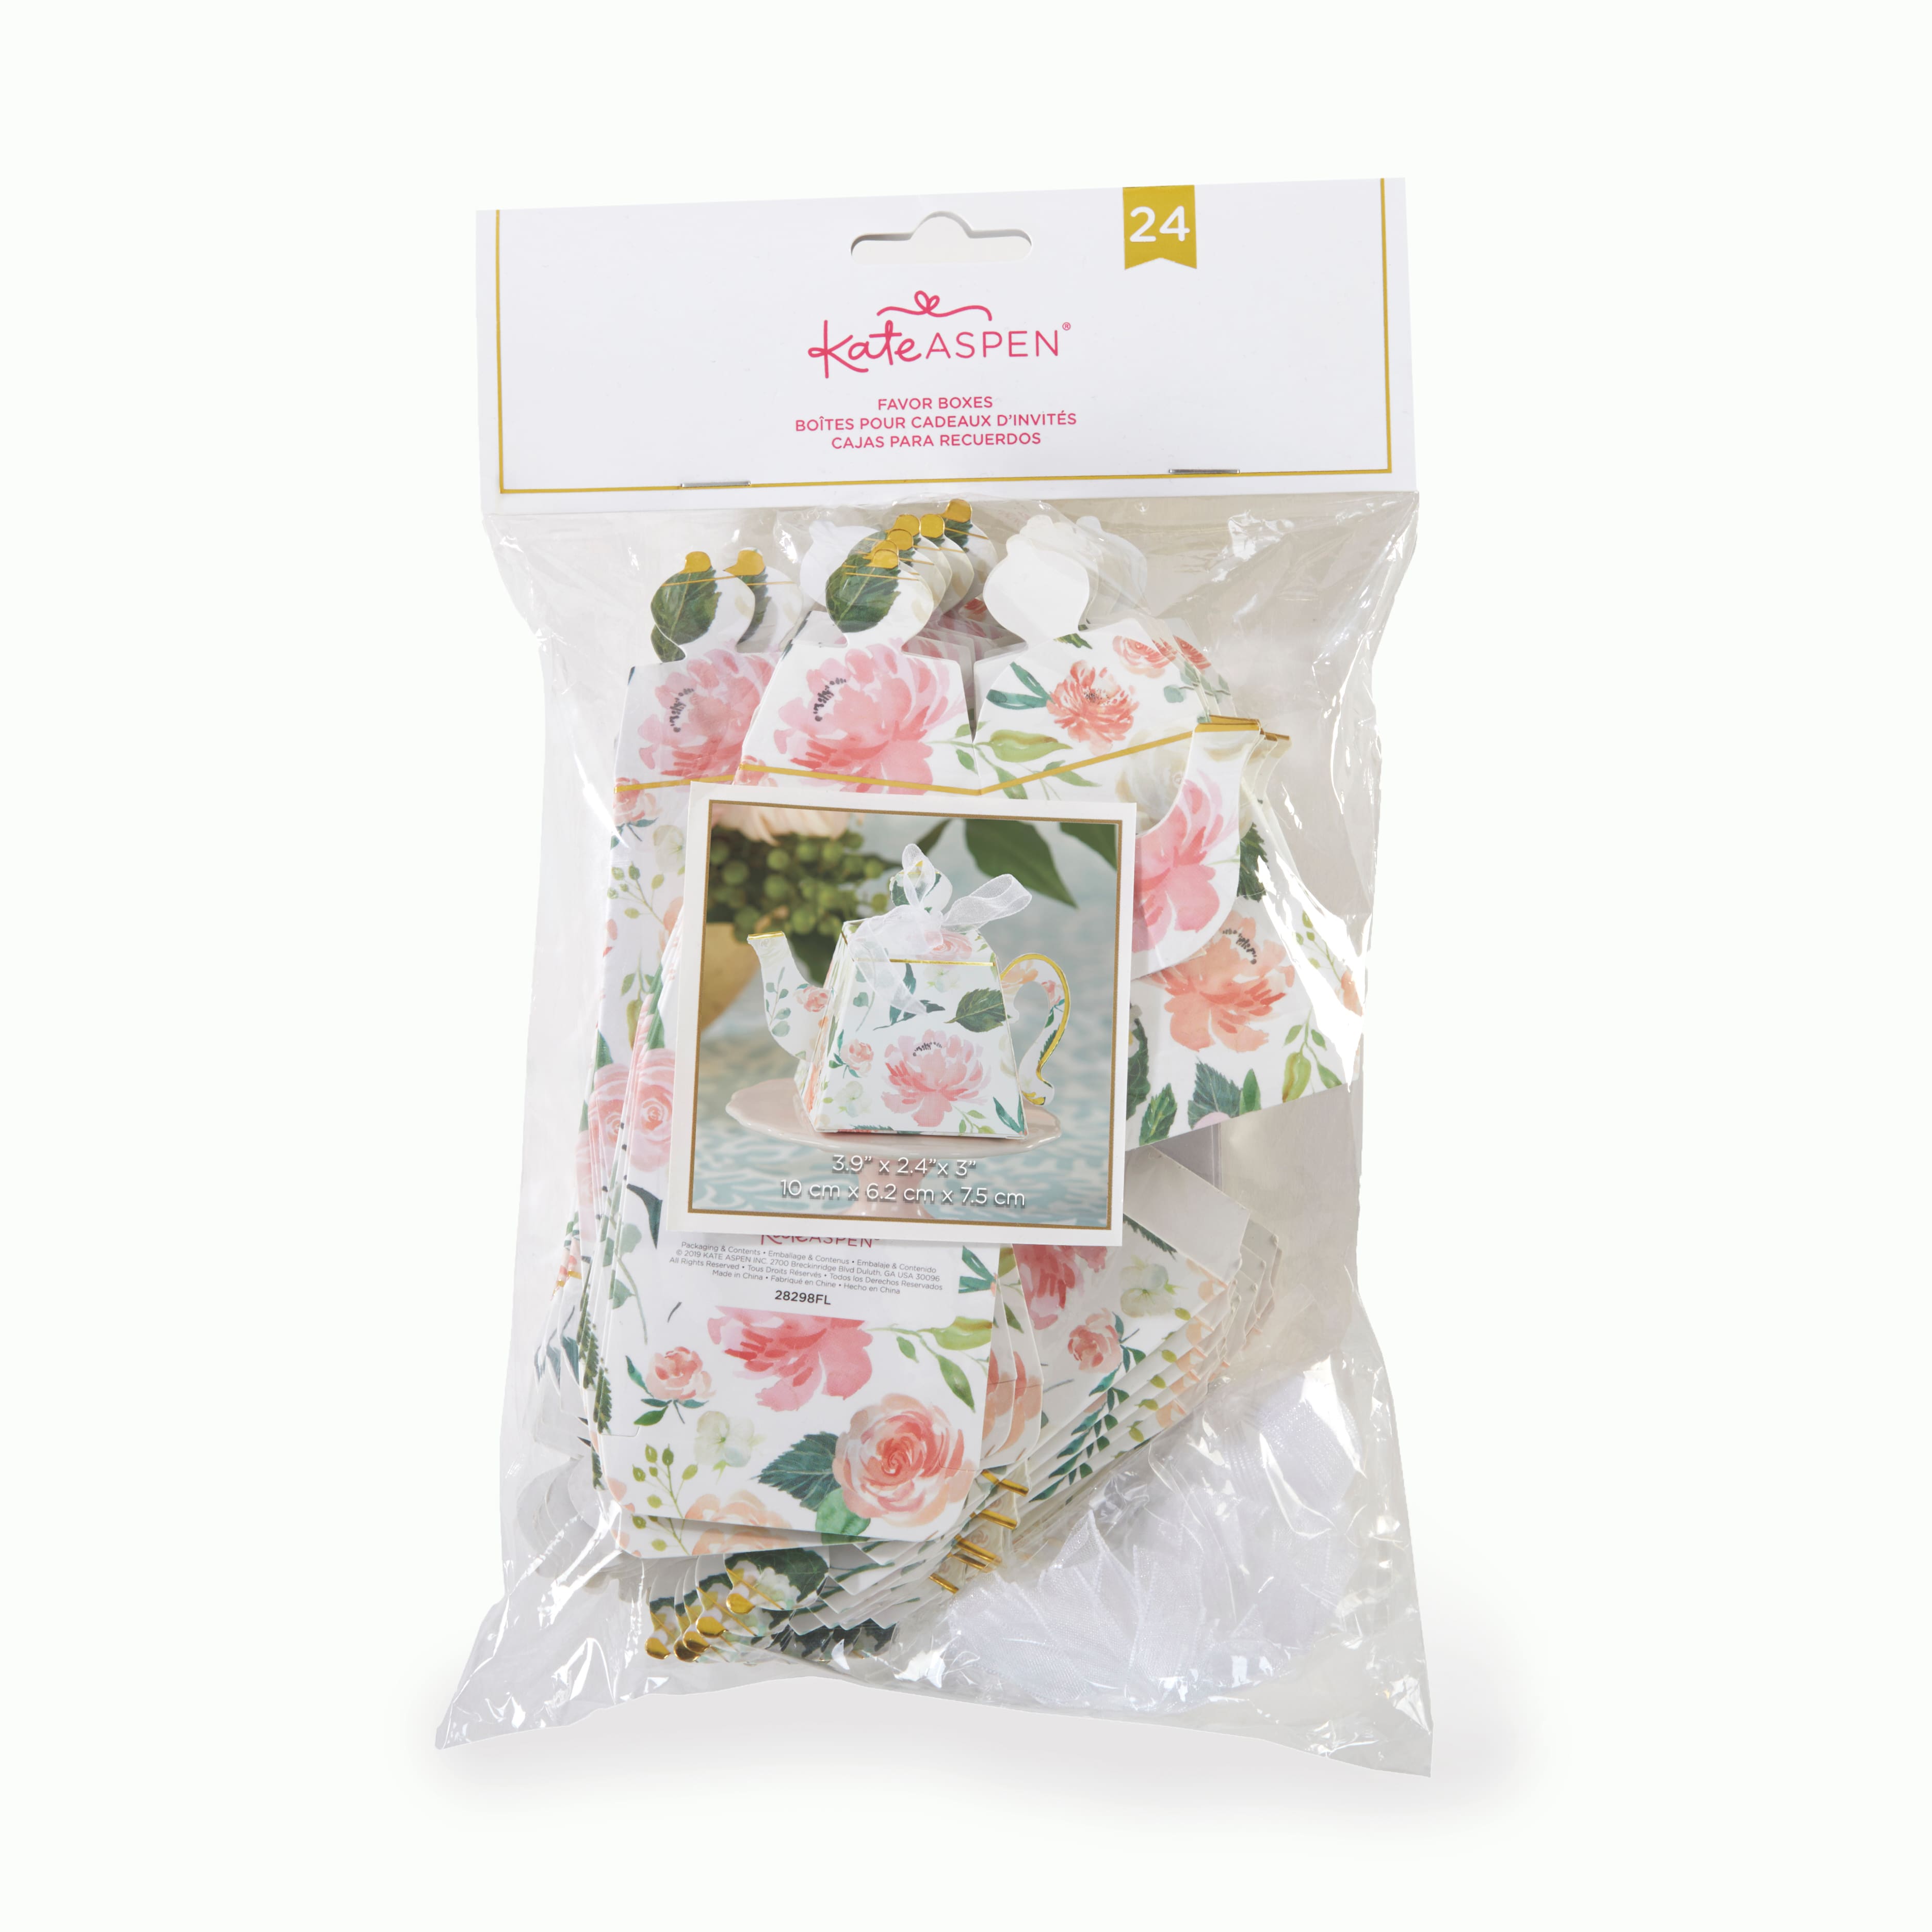 Kate Aspen&#xAE; Brunch Floral Teapot Favor Box Set, 24ct.